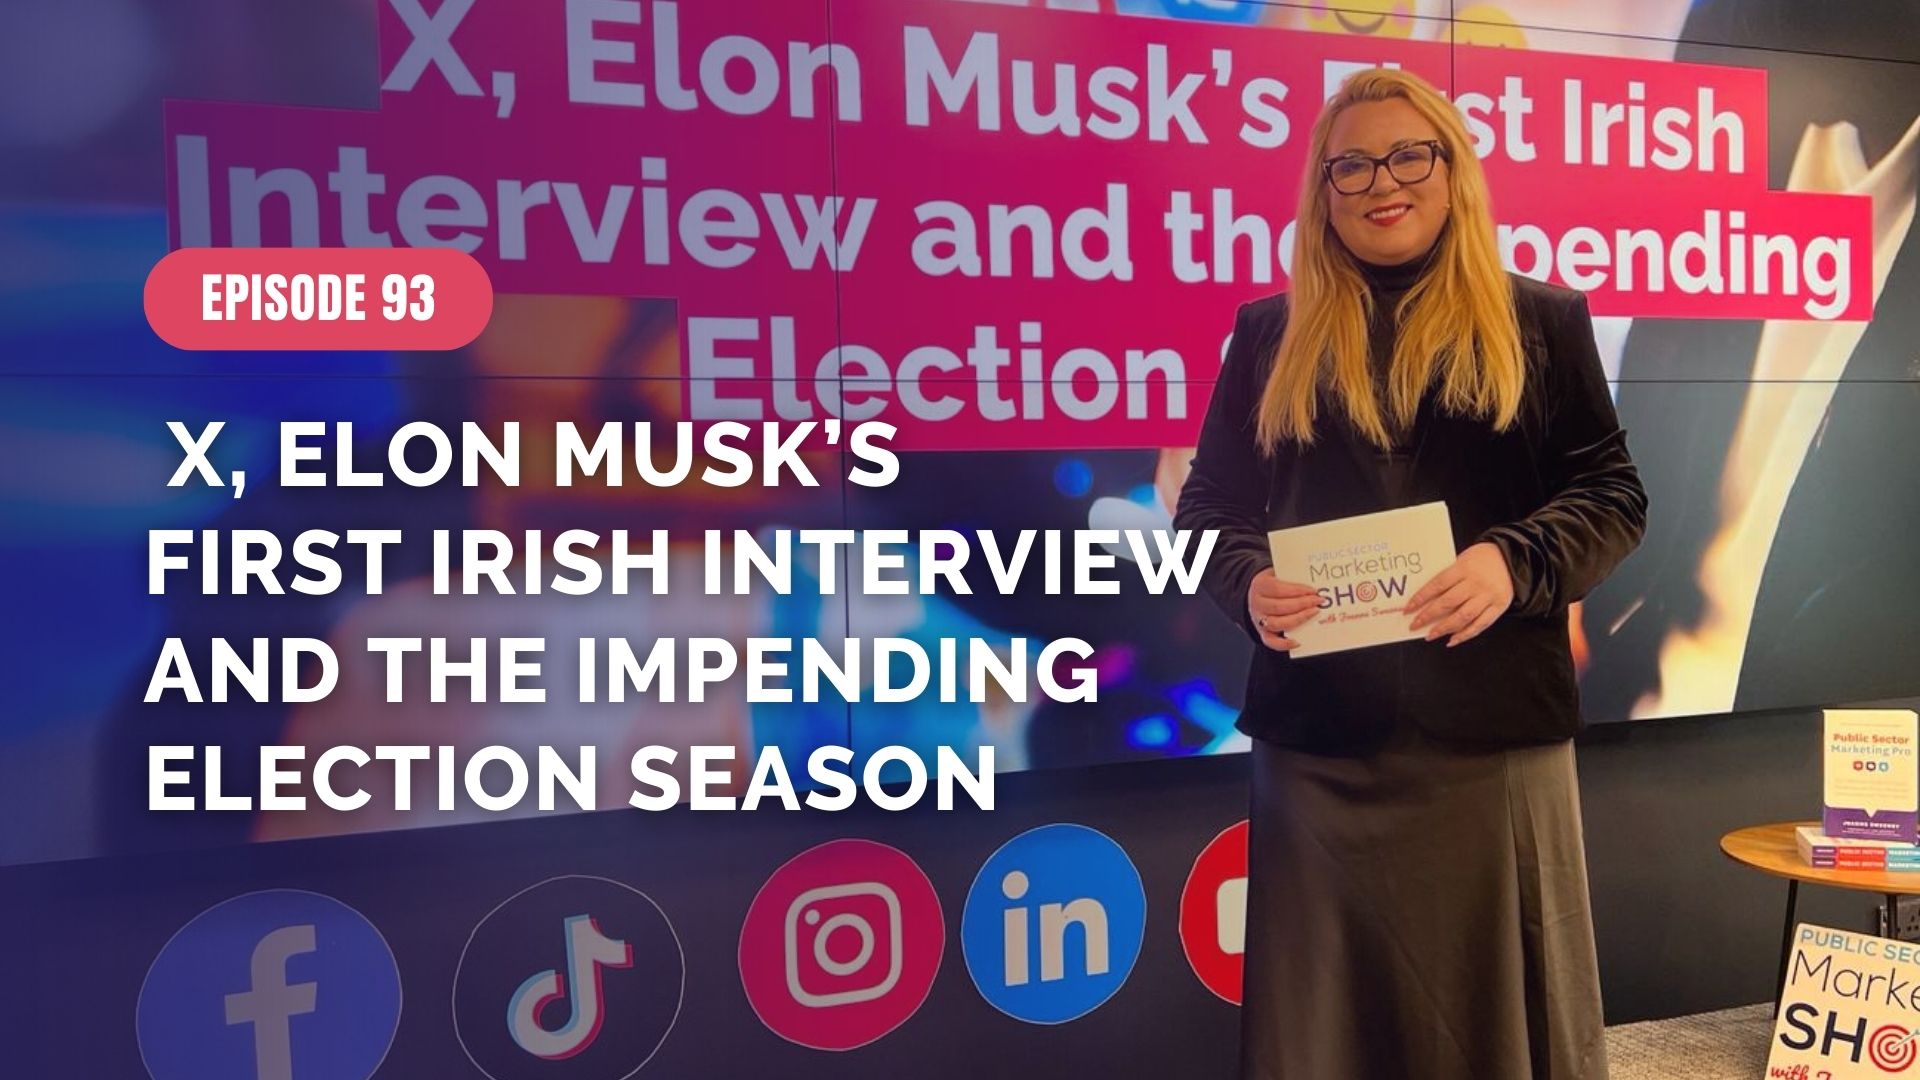 X, Elon Musk’s First Irish Interview